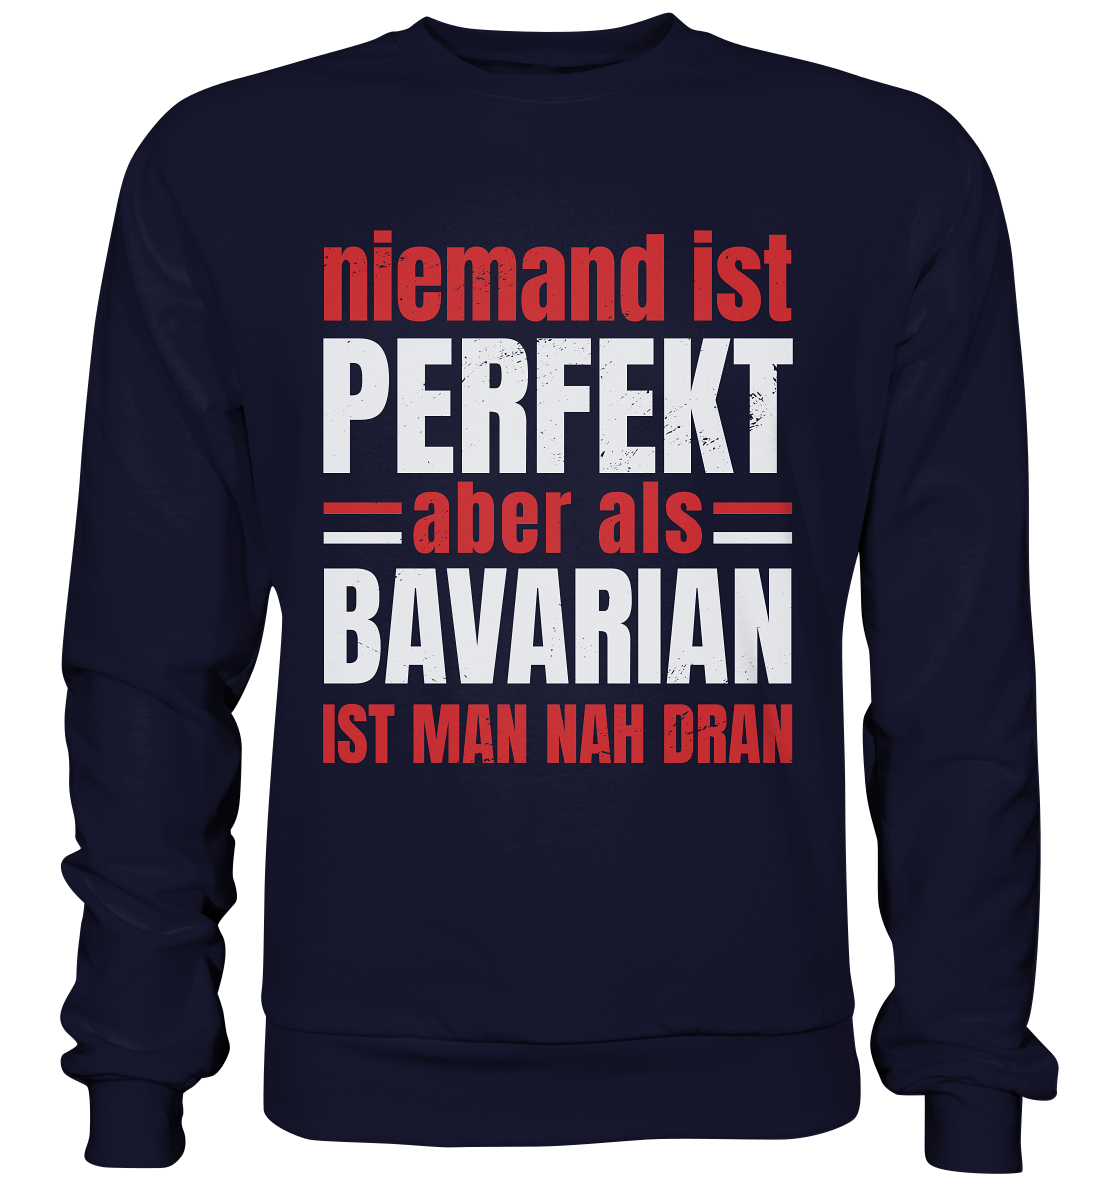 Personne n'est parfait, mais en tant que Bavarois, vous en êtes proche - sweat-shirt basique